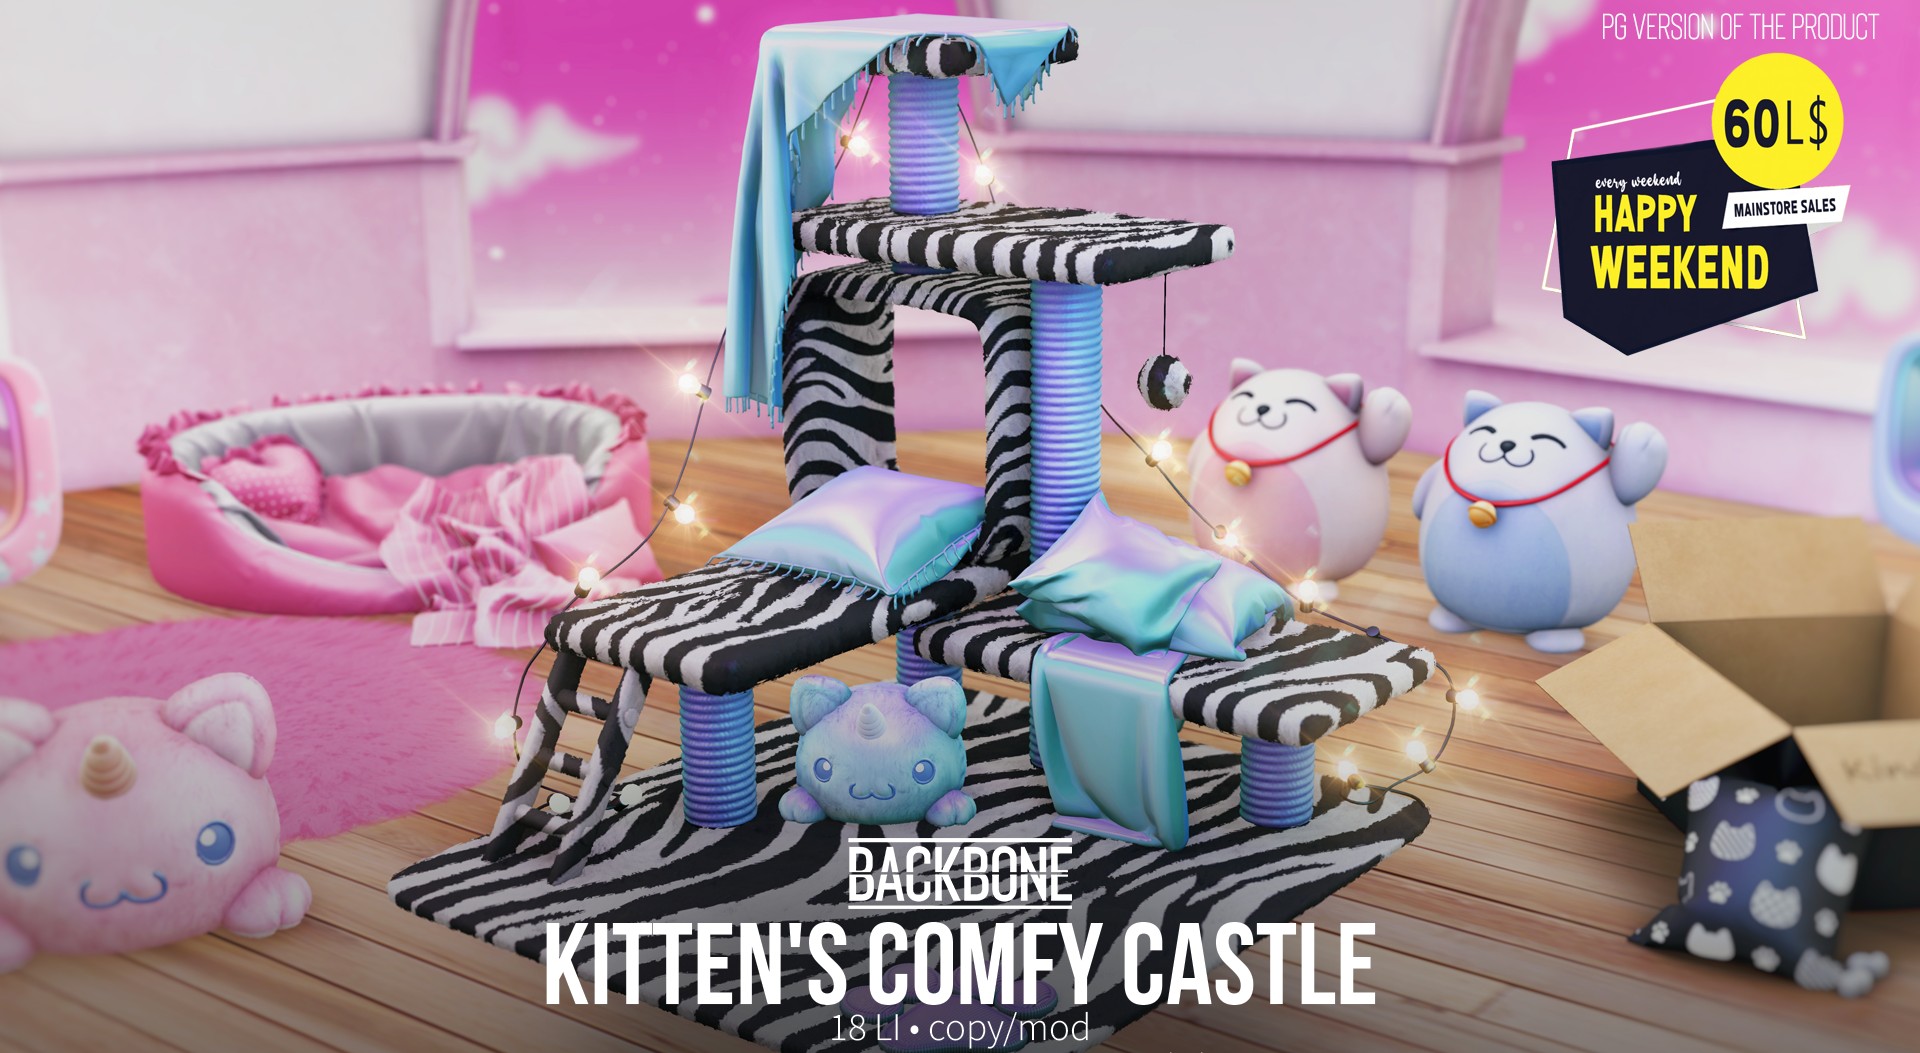 BackBone – Kitten’s Comfy Castle PG